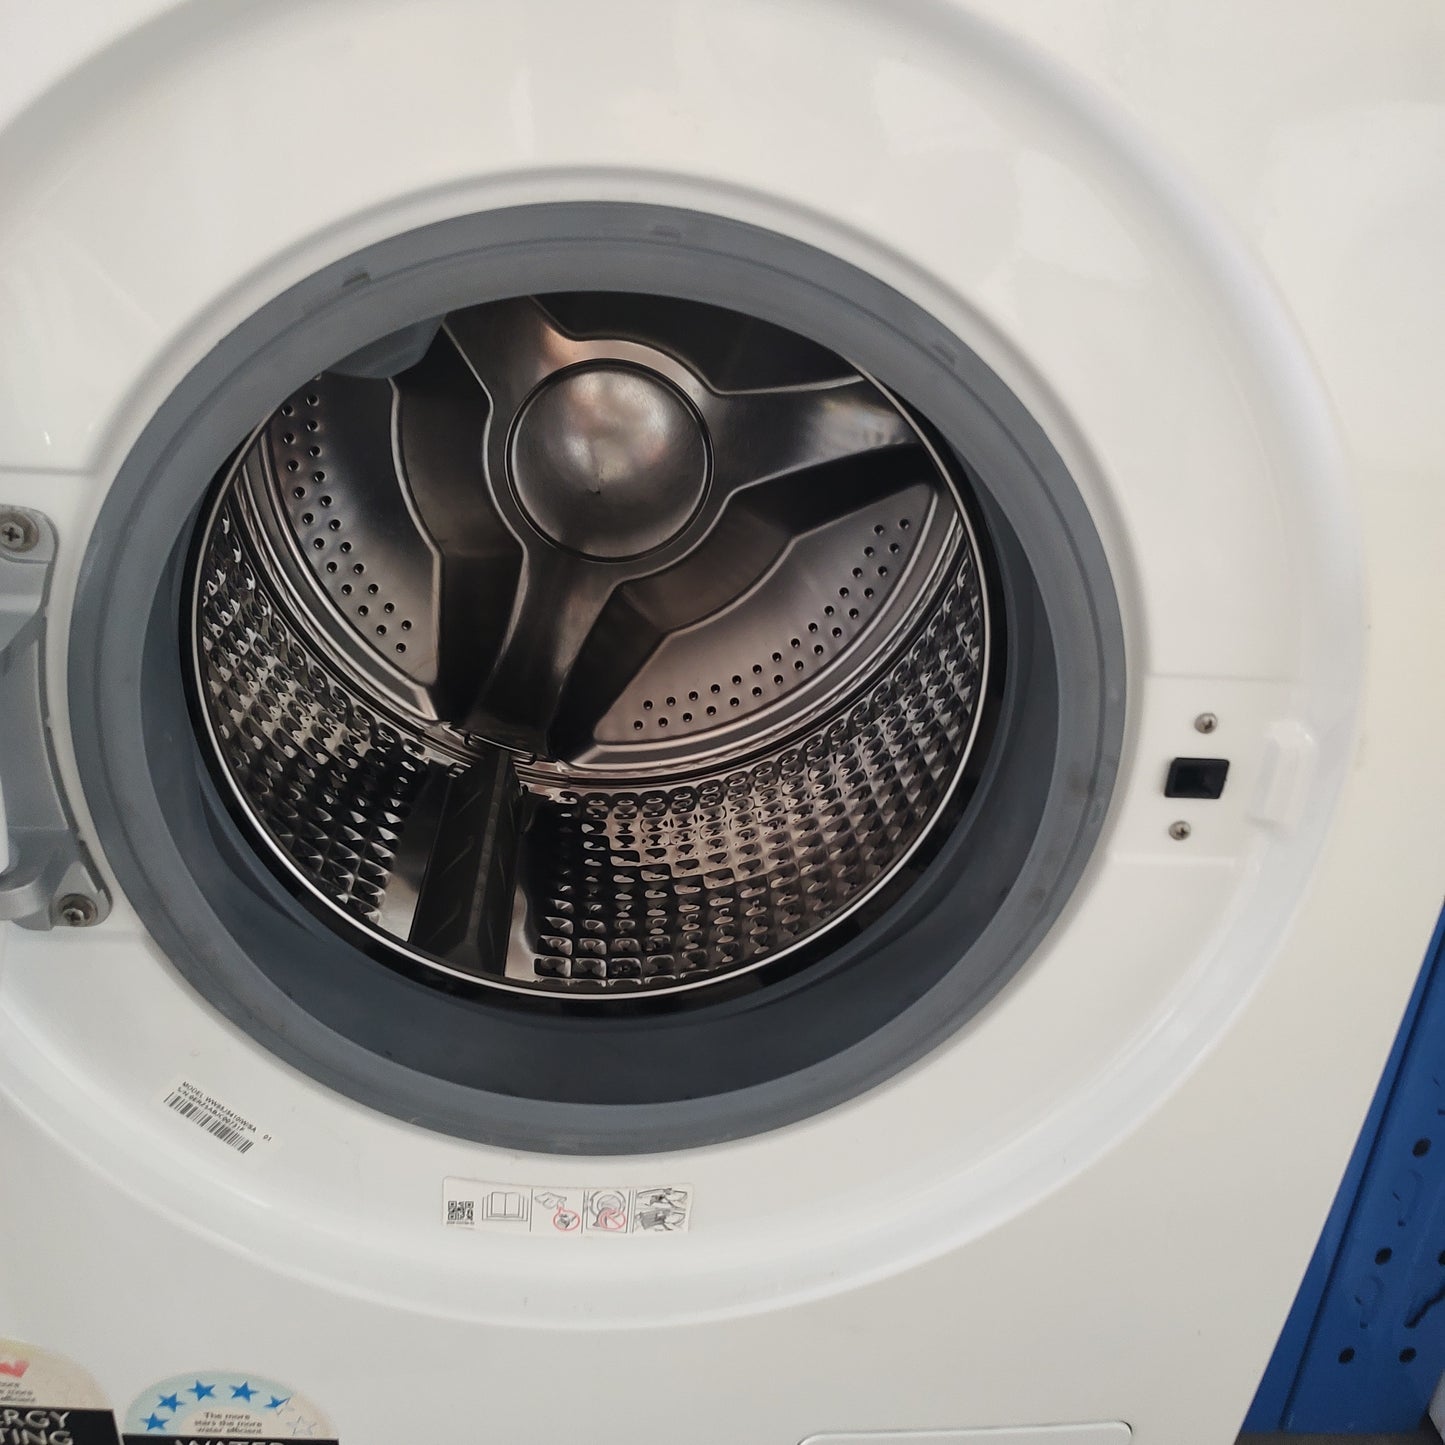 Samsung WW85J5410IW 8.5kg Front Load Washing Machine